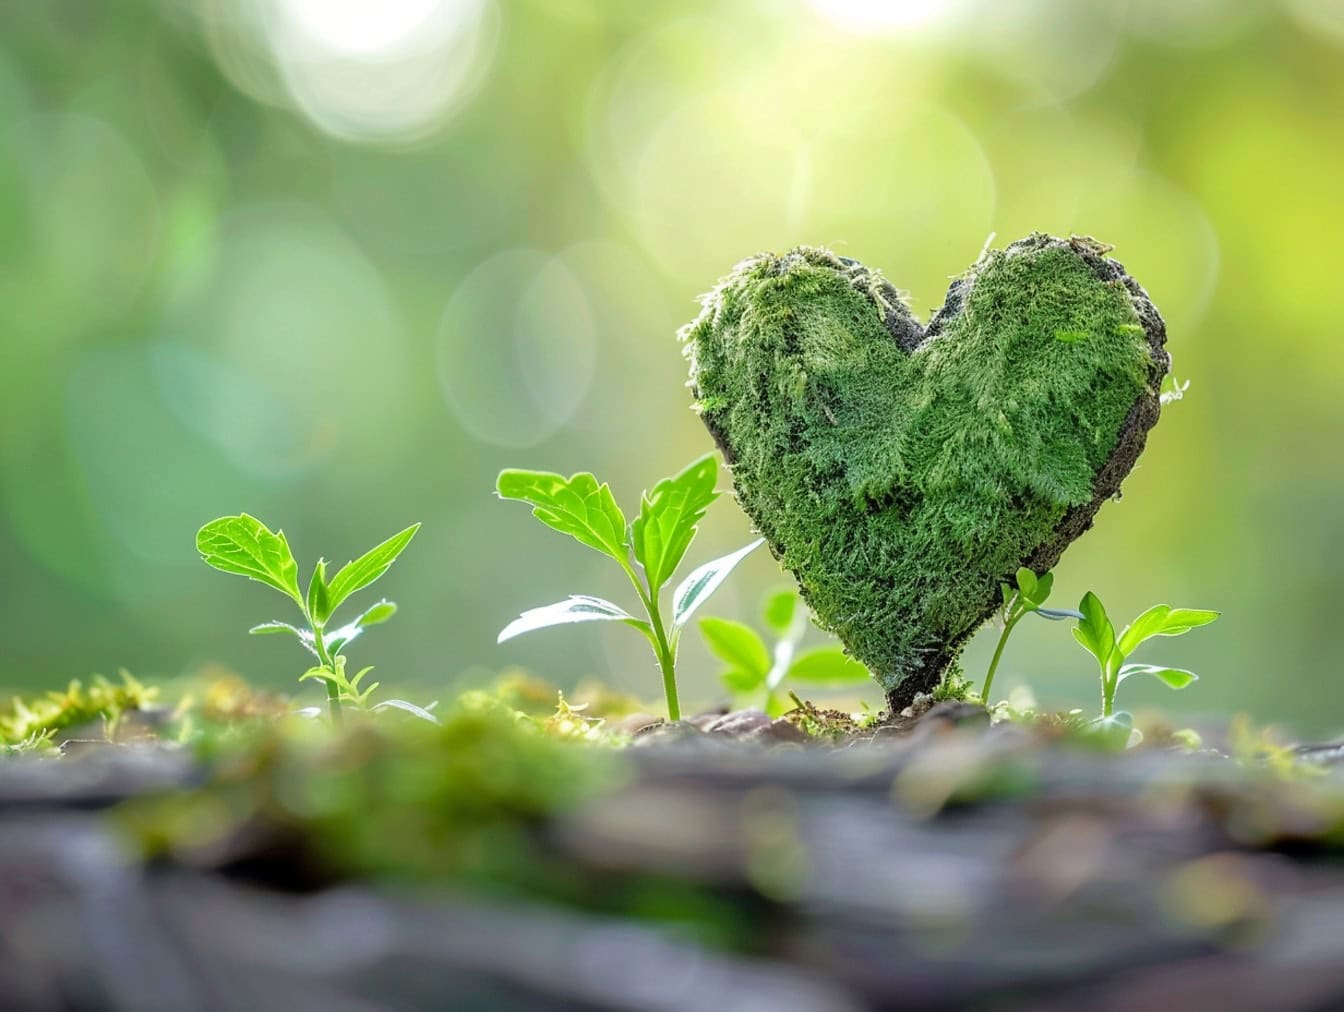 Hjerteformet mos ved siden af frøplanter i græs, illustration af kærlighed til naturen og foråret